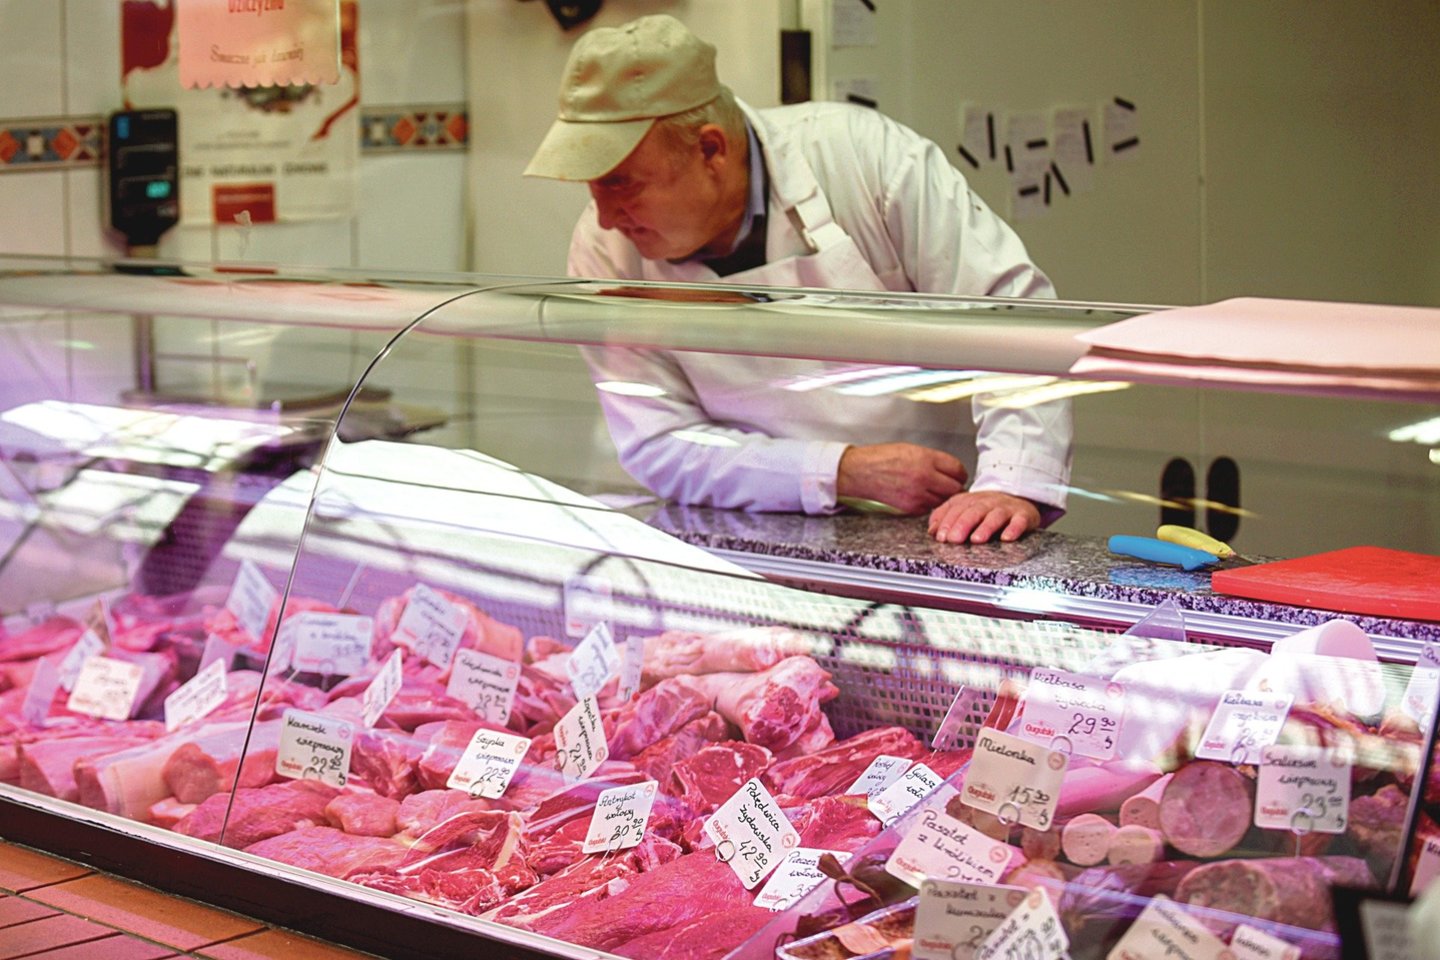  Sergančių karvių mėsa po Europą pasklido iš šios Lenkijoje esančios skerdyklos. Net kai kurios Lenkijos parduotuvės jau atsisakė prekiauti lenkiška jautiena.<br> lrytas.lt nuotr.